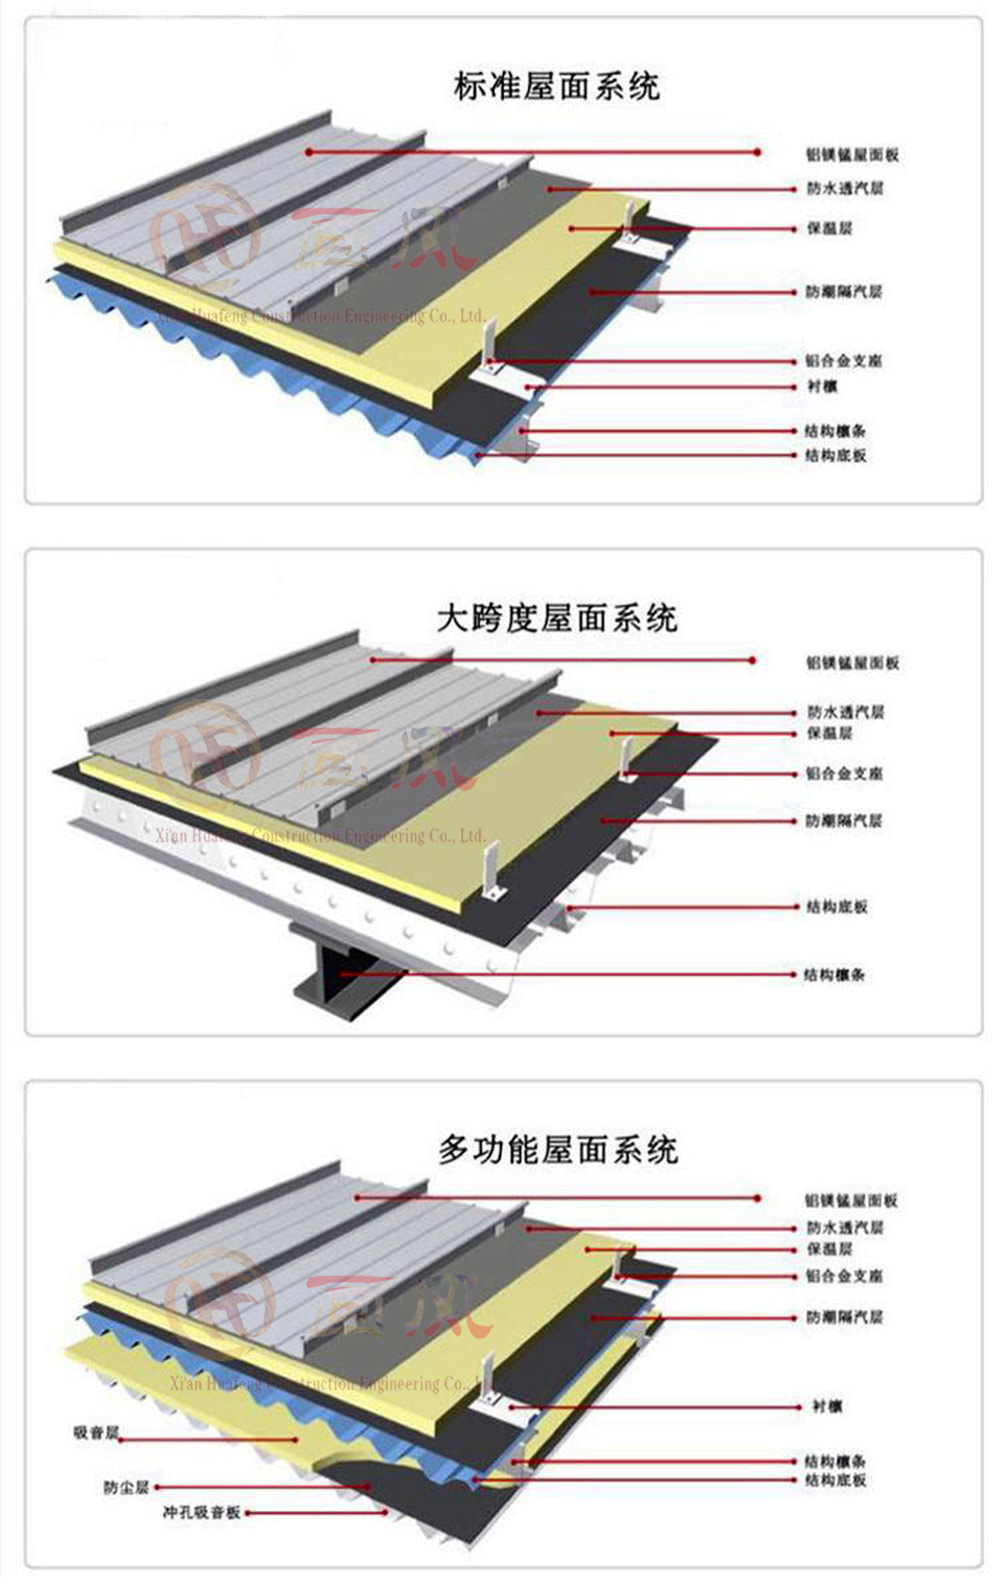 西安画风建筑工程有限公司 直立锁边65-430金属屋面板